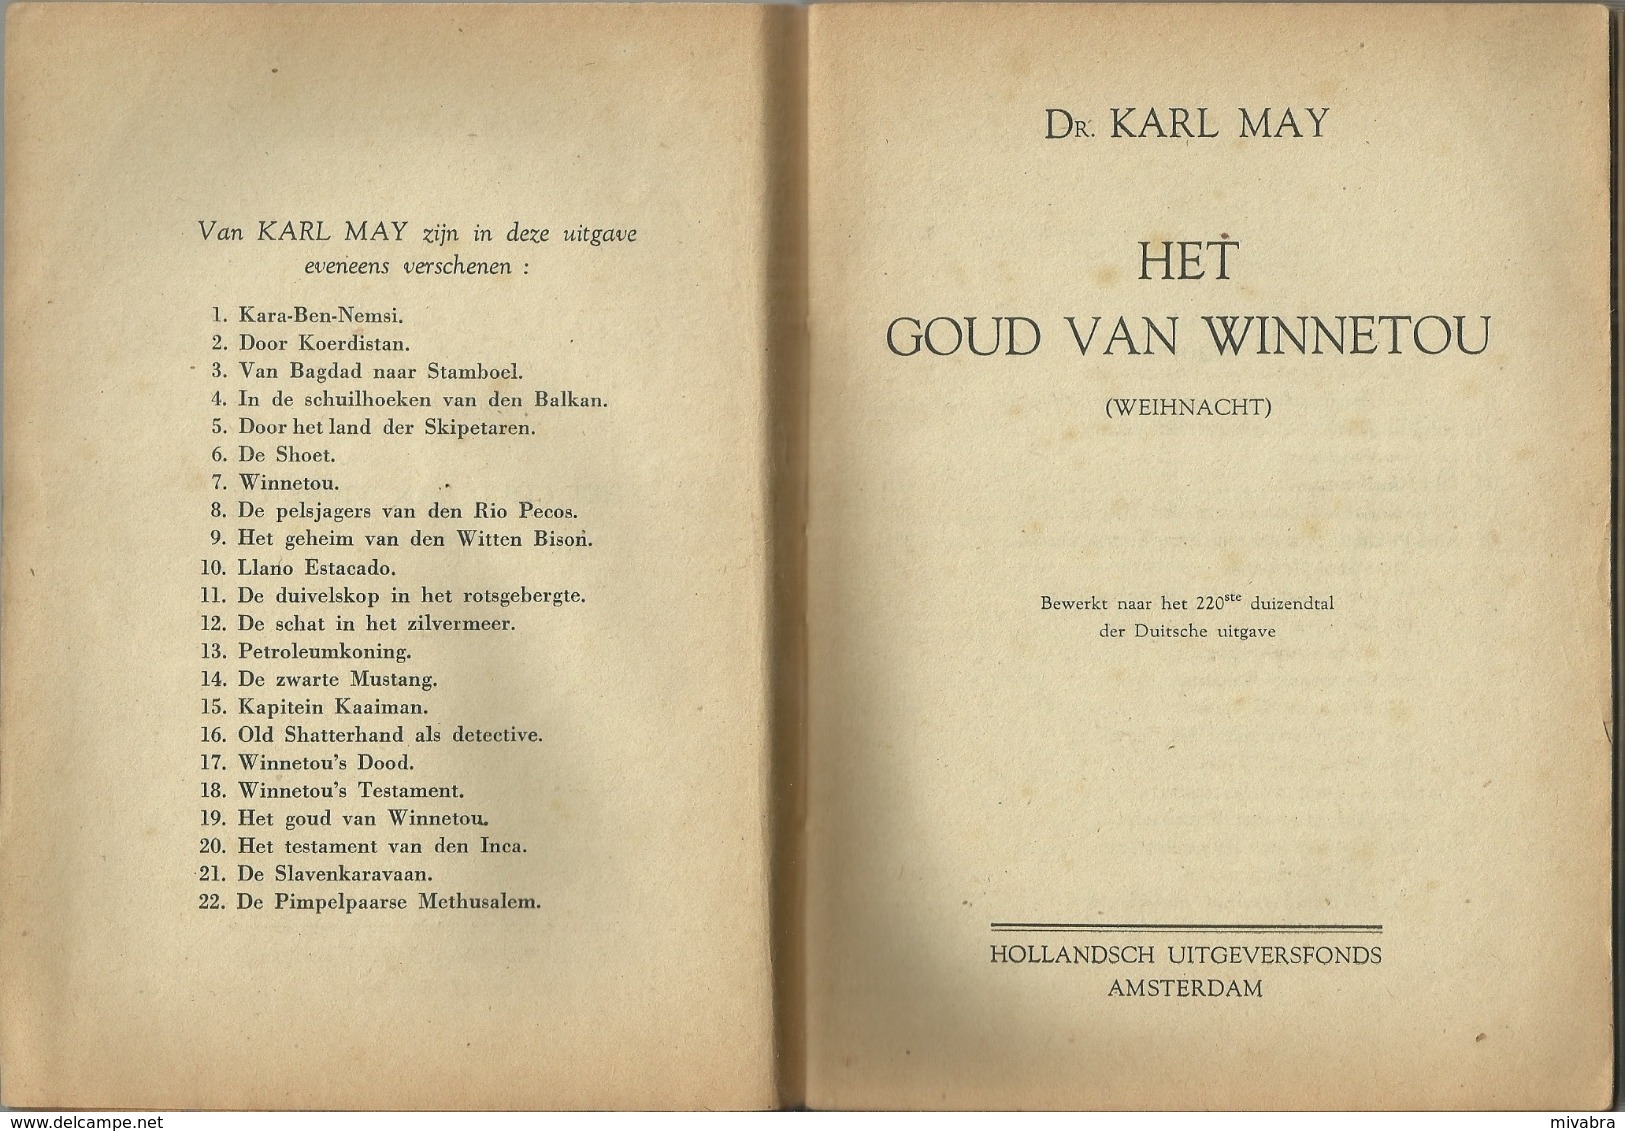 DR. KARL MAY - KARL MAY'S REISAVONTUREN - HET GOUD VAN WINNETOU - HOLLANDSCH Uitgeversfonds AMSTERDAM -1942 - Oud